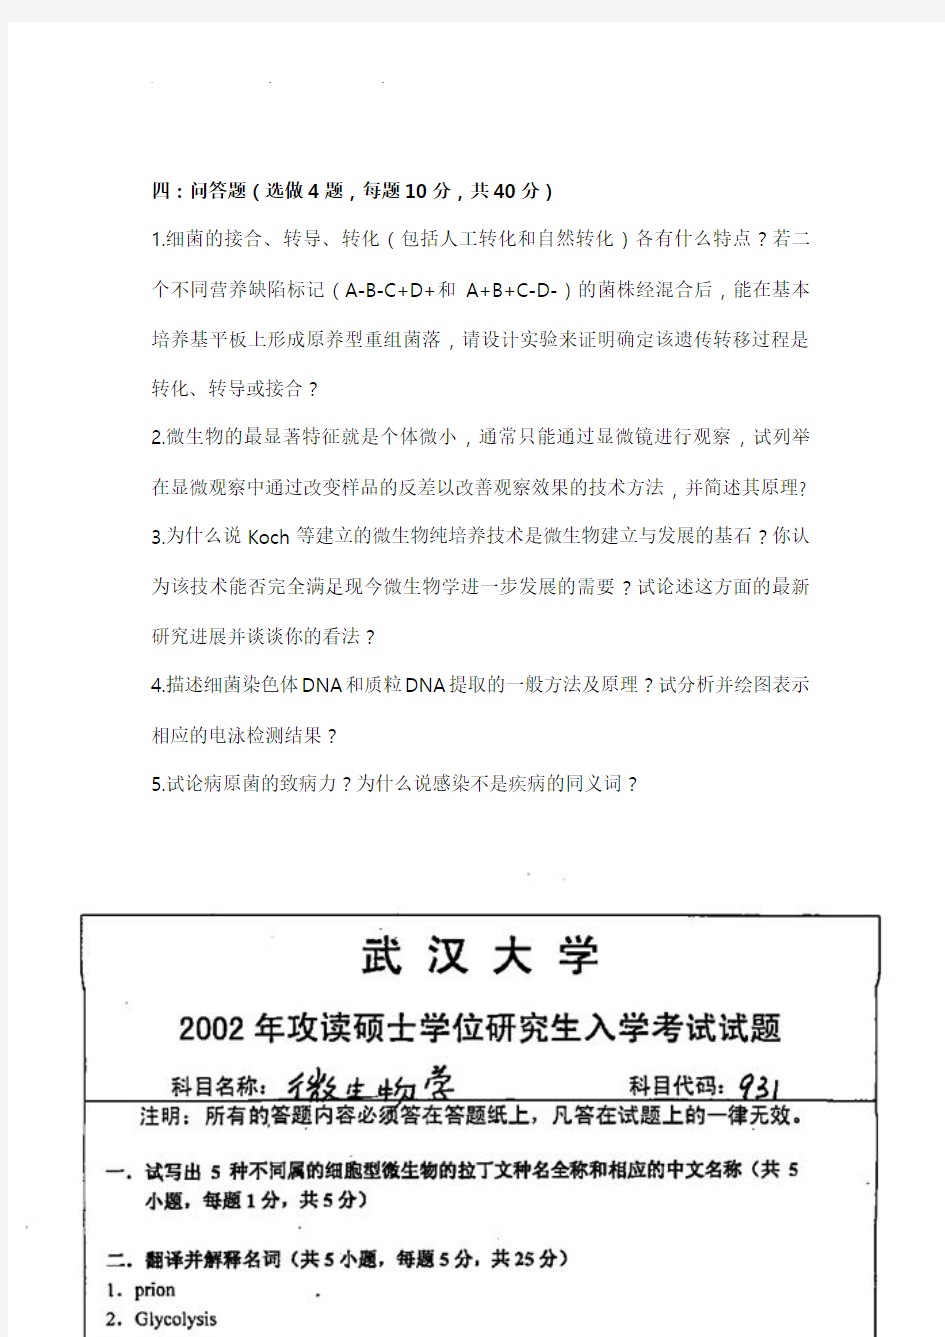 武汉大学微生物考研历年真题汇总2001_2004、2010_2015